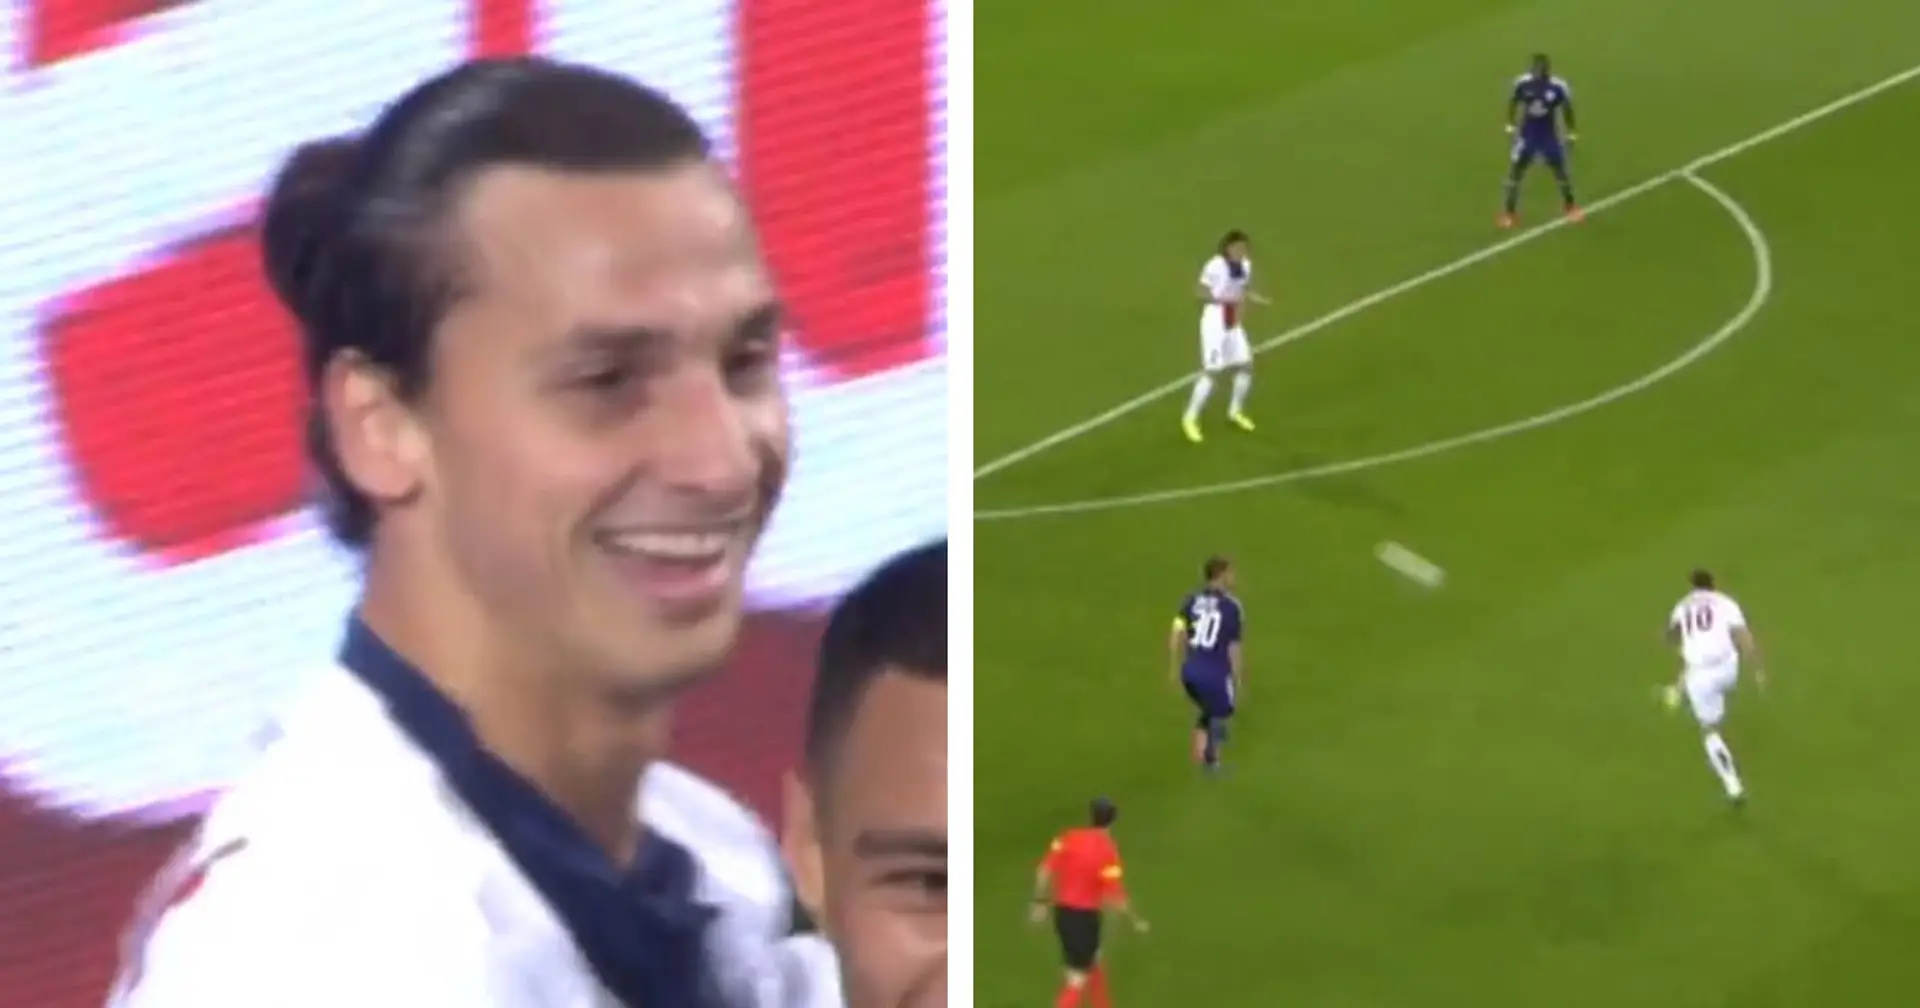 "Zlatan, Zlatan" : le jour où Ibrahimovic a fait lever le stade des adversaires en plantant un quadruplé